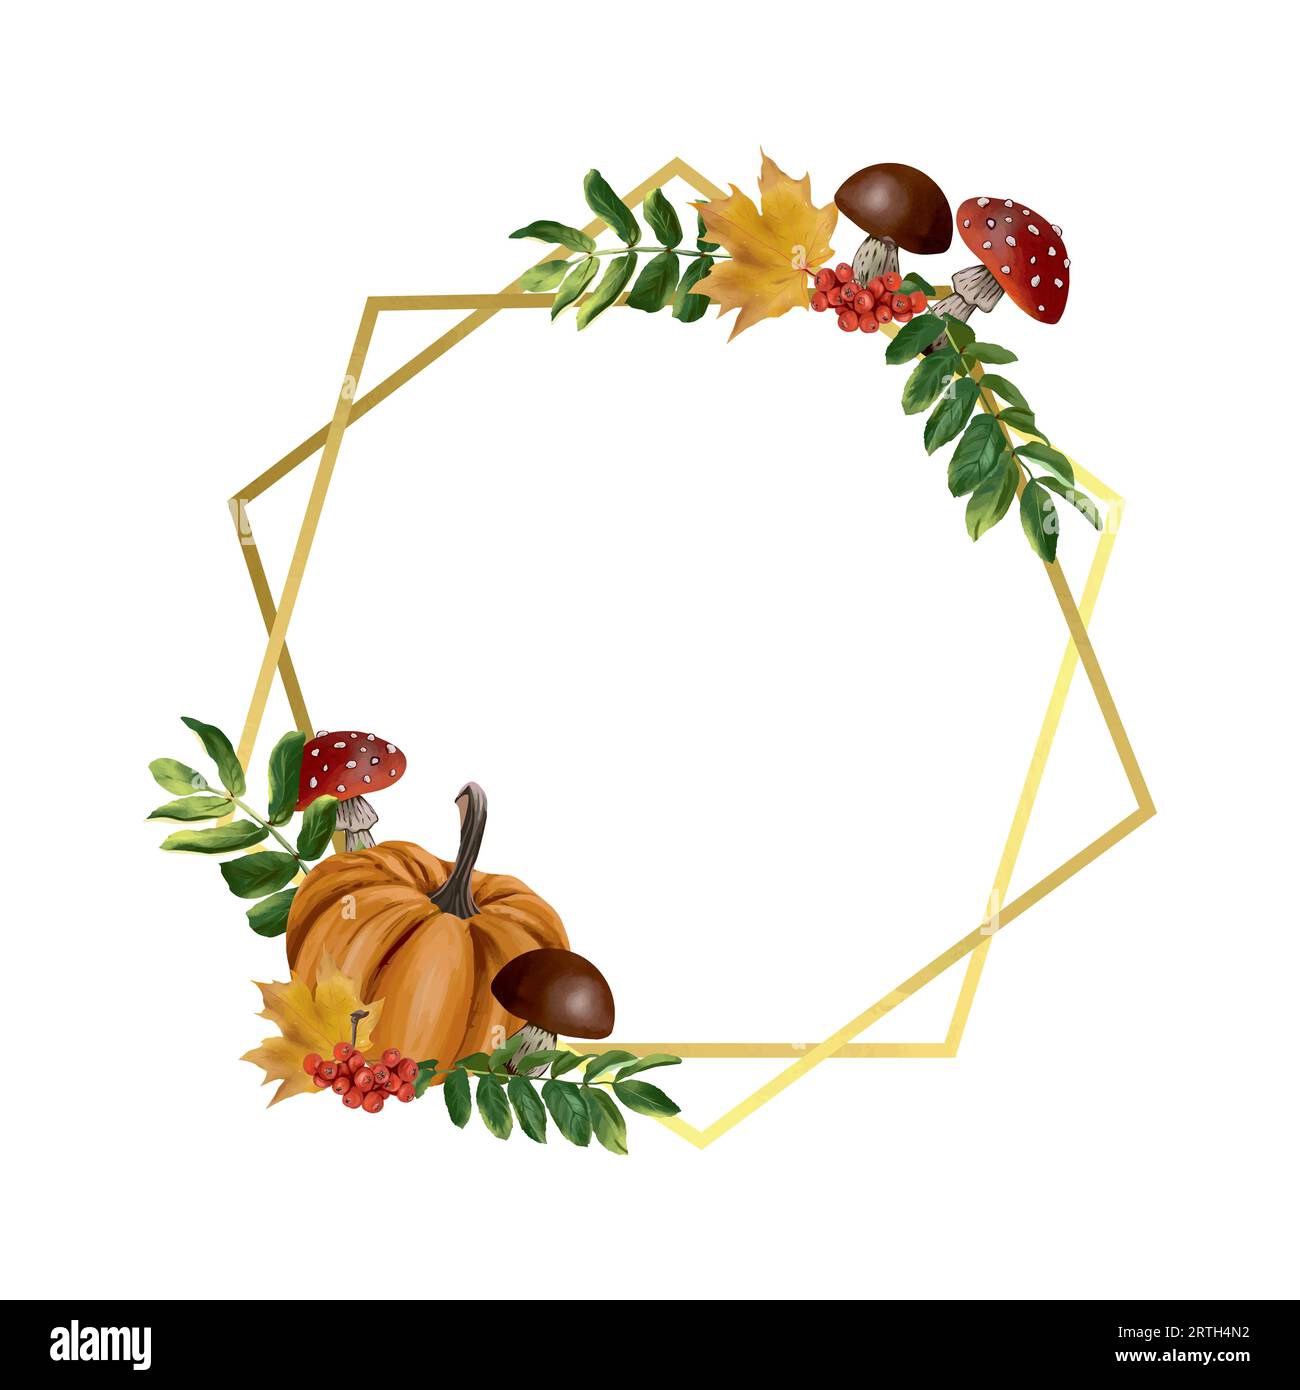 Goldener geometrischer Rahmen im Herbst. Vektorillustration mit Kürbis, Pilzen, Blättern. Designelement für Grußkarten, Einladungen, Herbstbanner. Stock Vektor